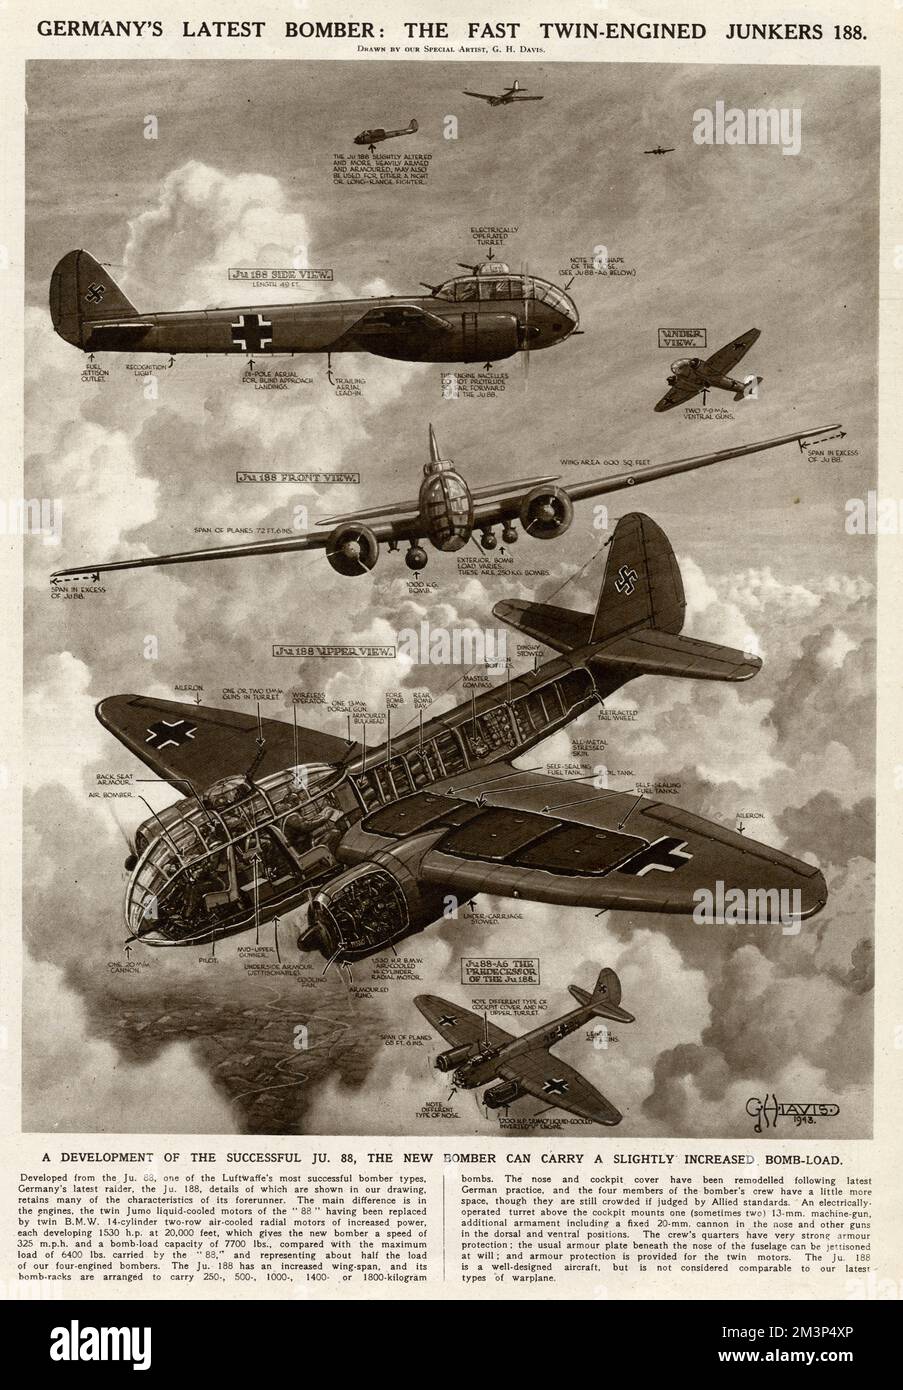 L'ultimo bombardiere della Germania durante la seconda guerra mondiale: Il veloce Junkers a doppia motore 188. Uno sviluppo del successo degli anni 'JU88, il nuovo bombardiere potrebbe portare un carico di bomba leggermente aumentato. Data: 1943 Foto Stock